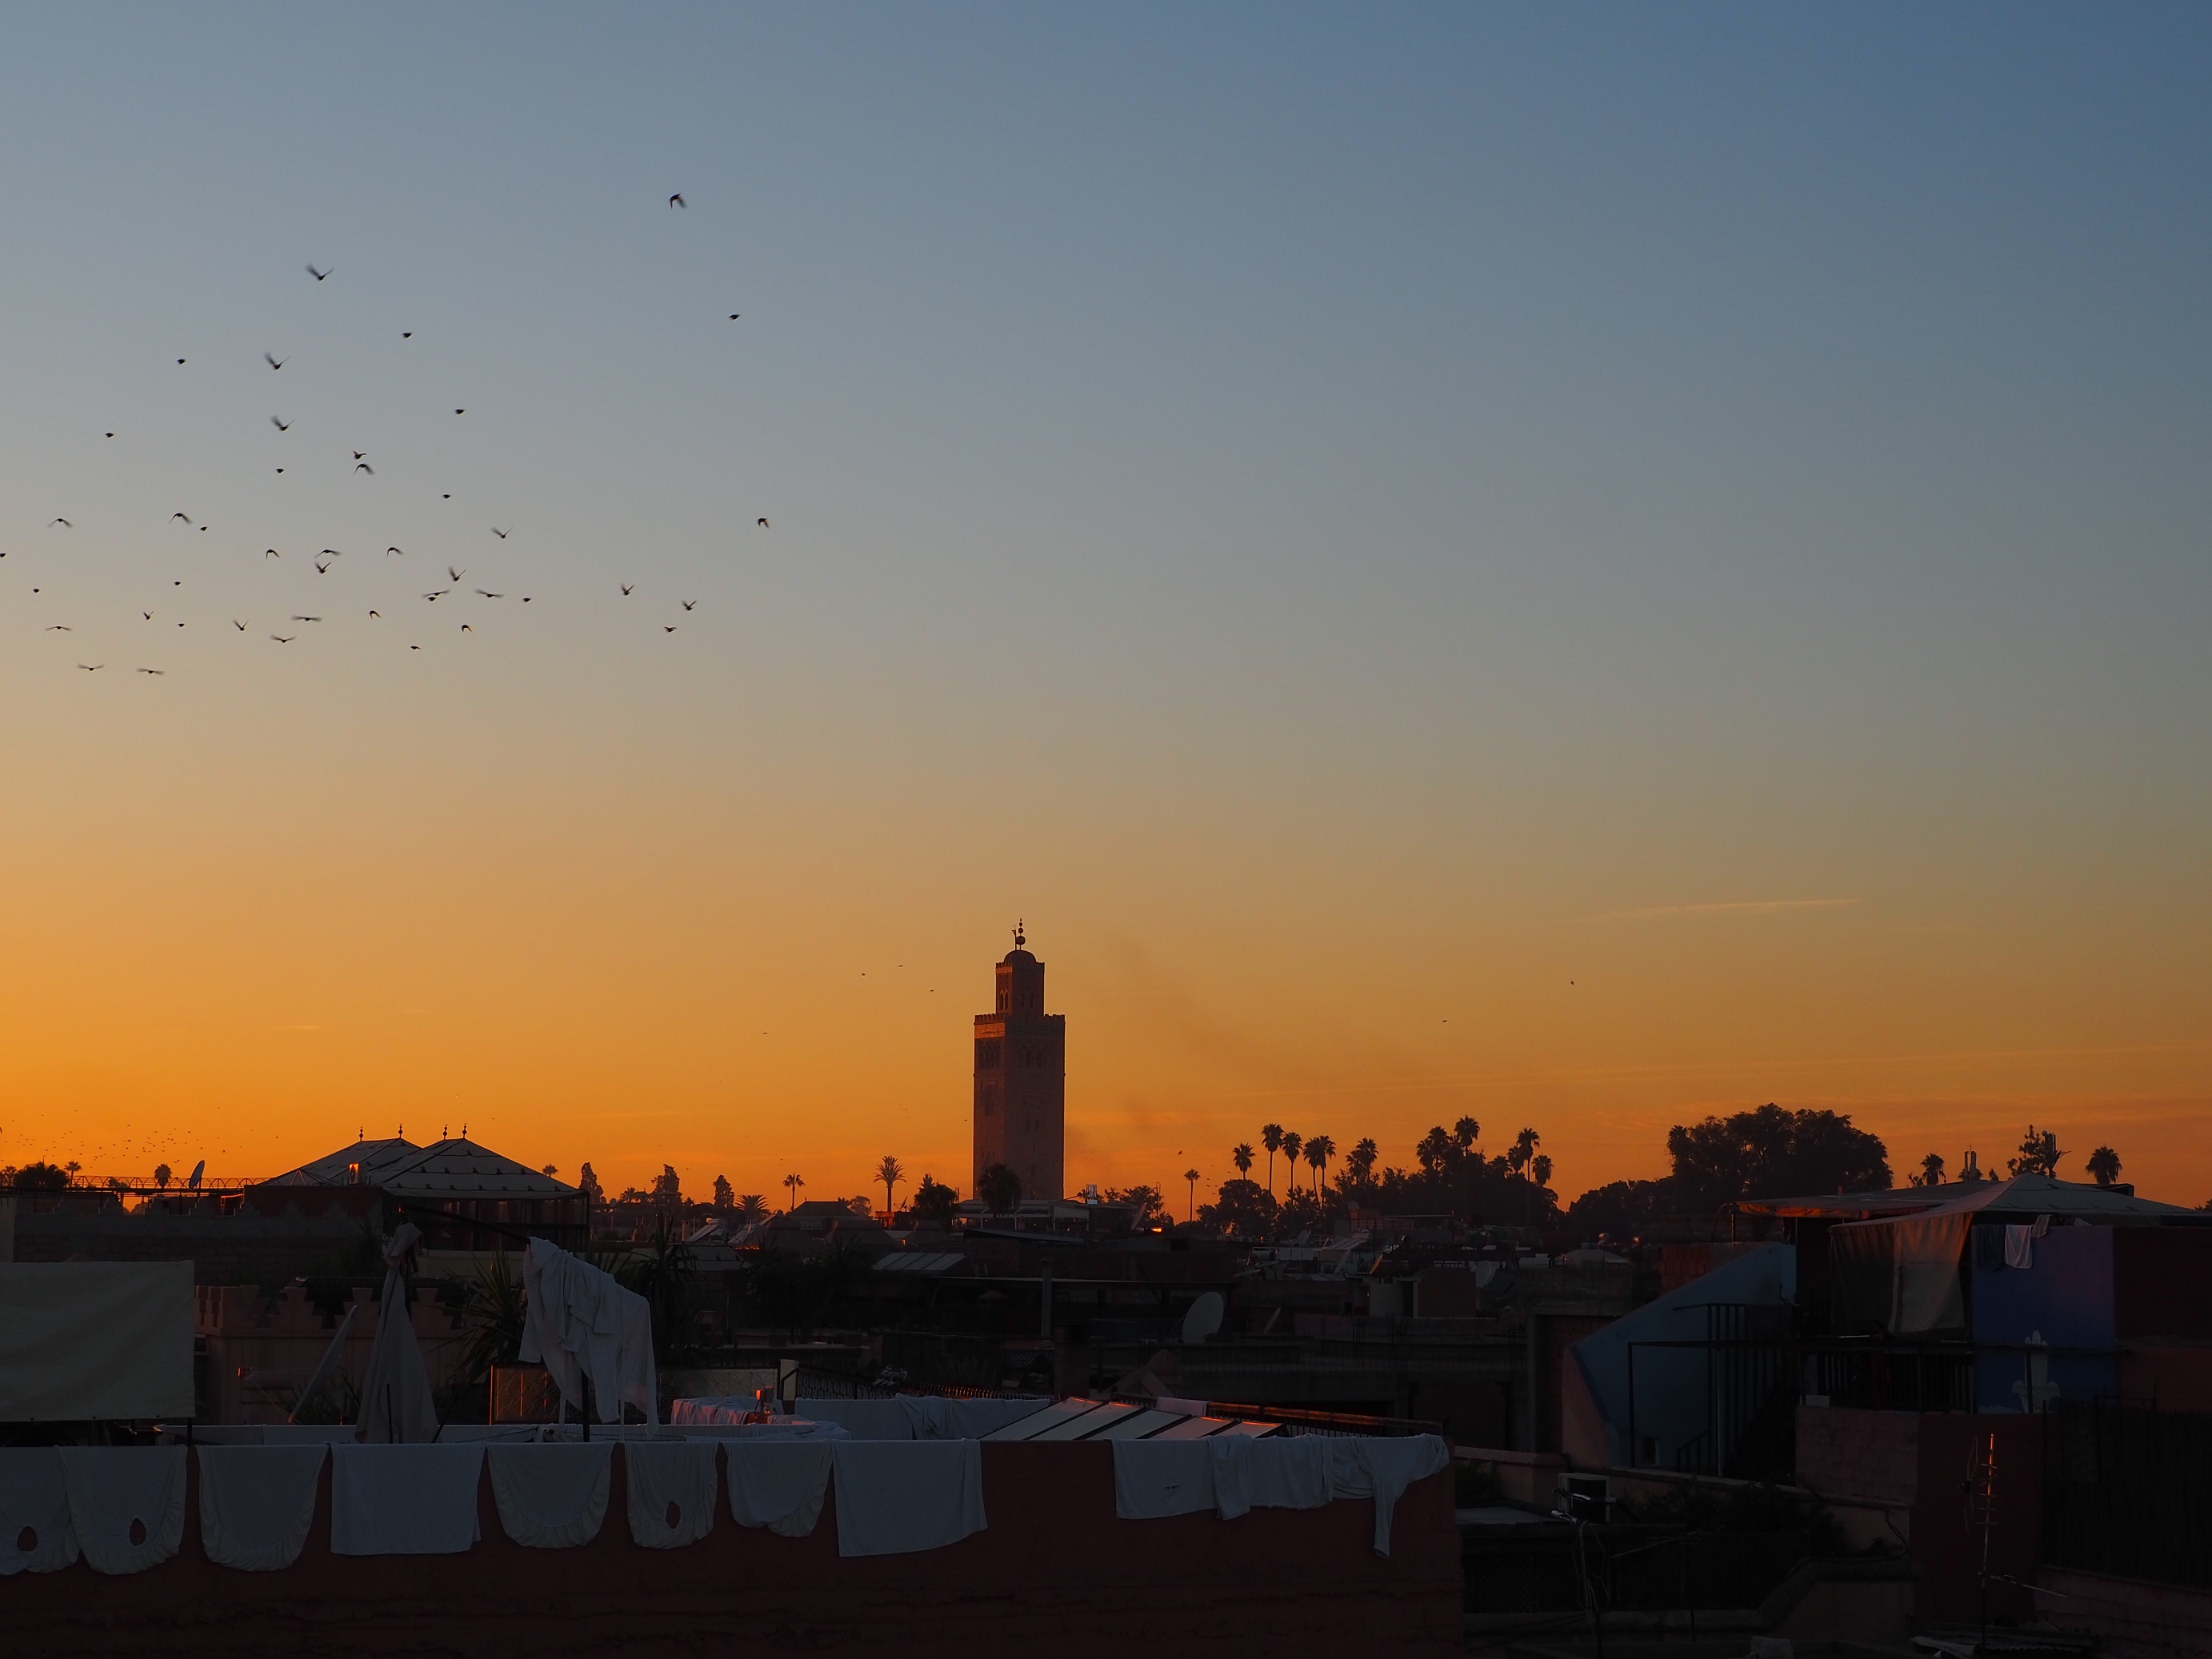 Coucher de soleil à Marrakech